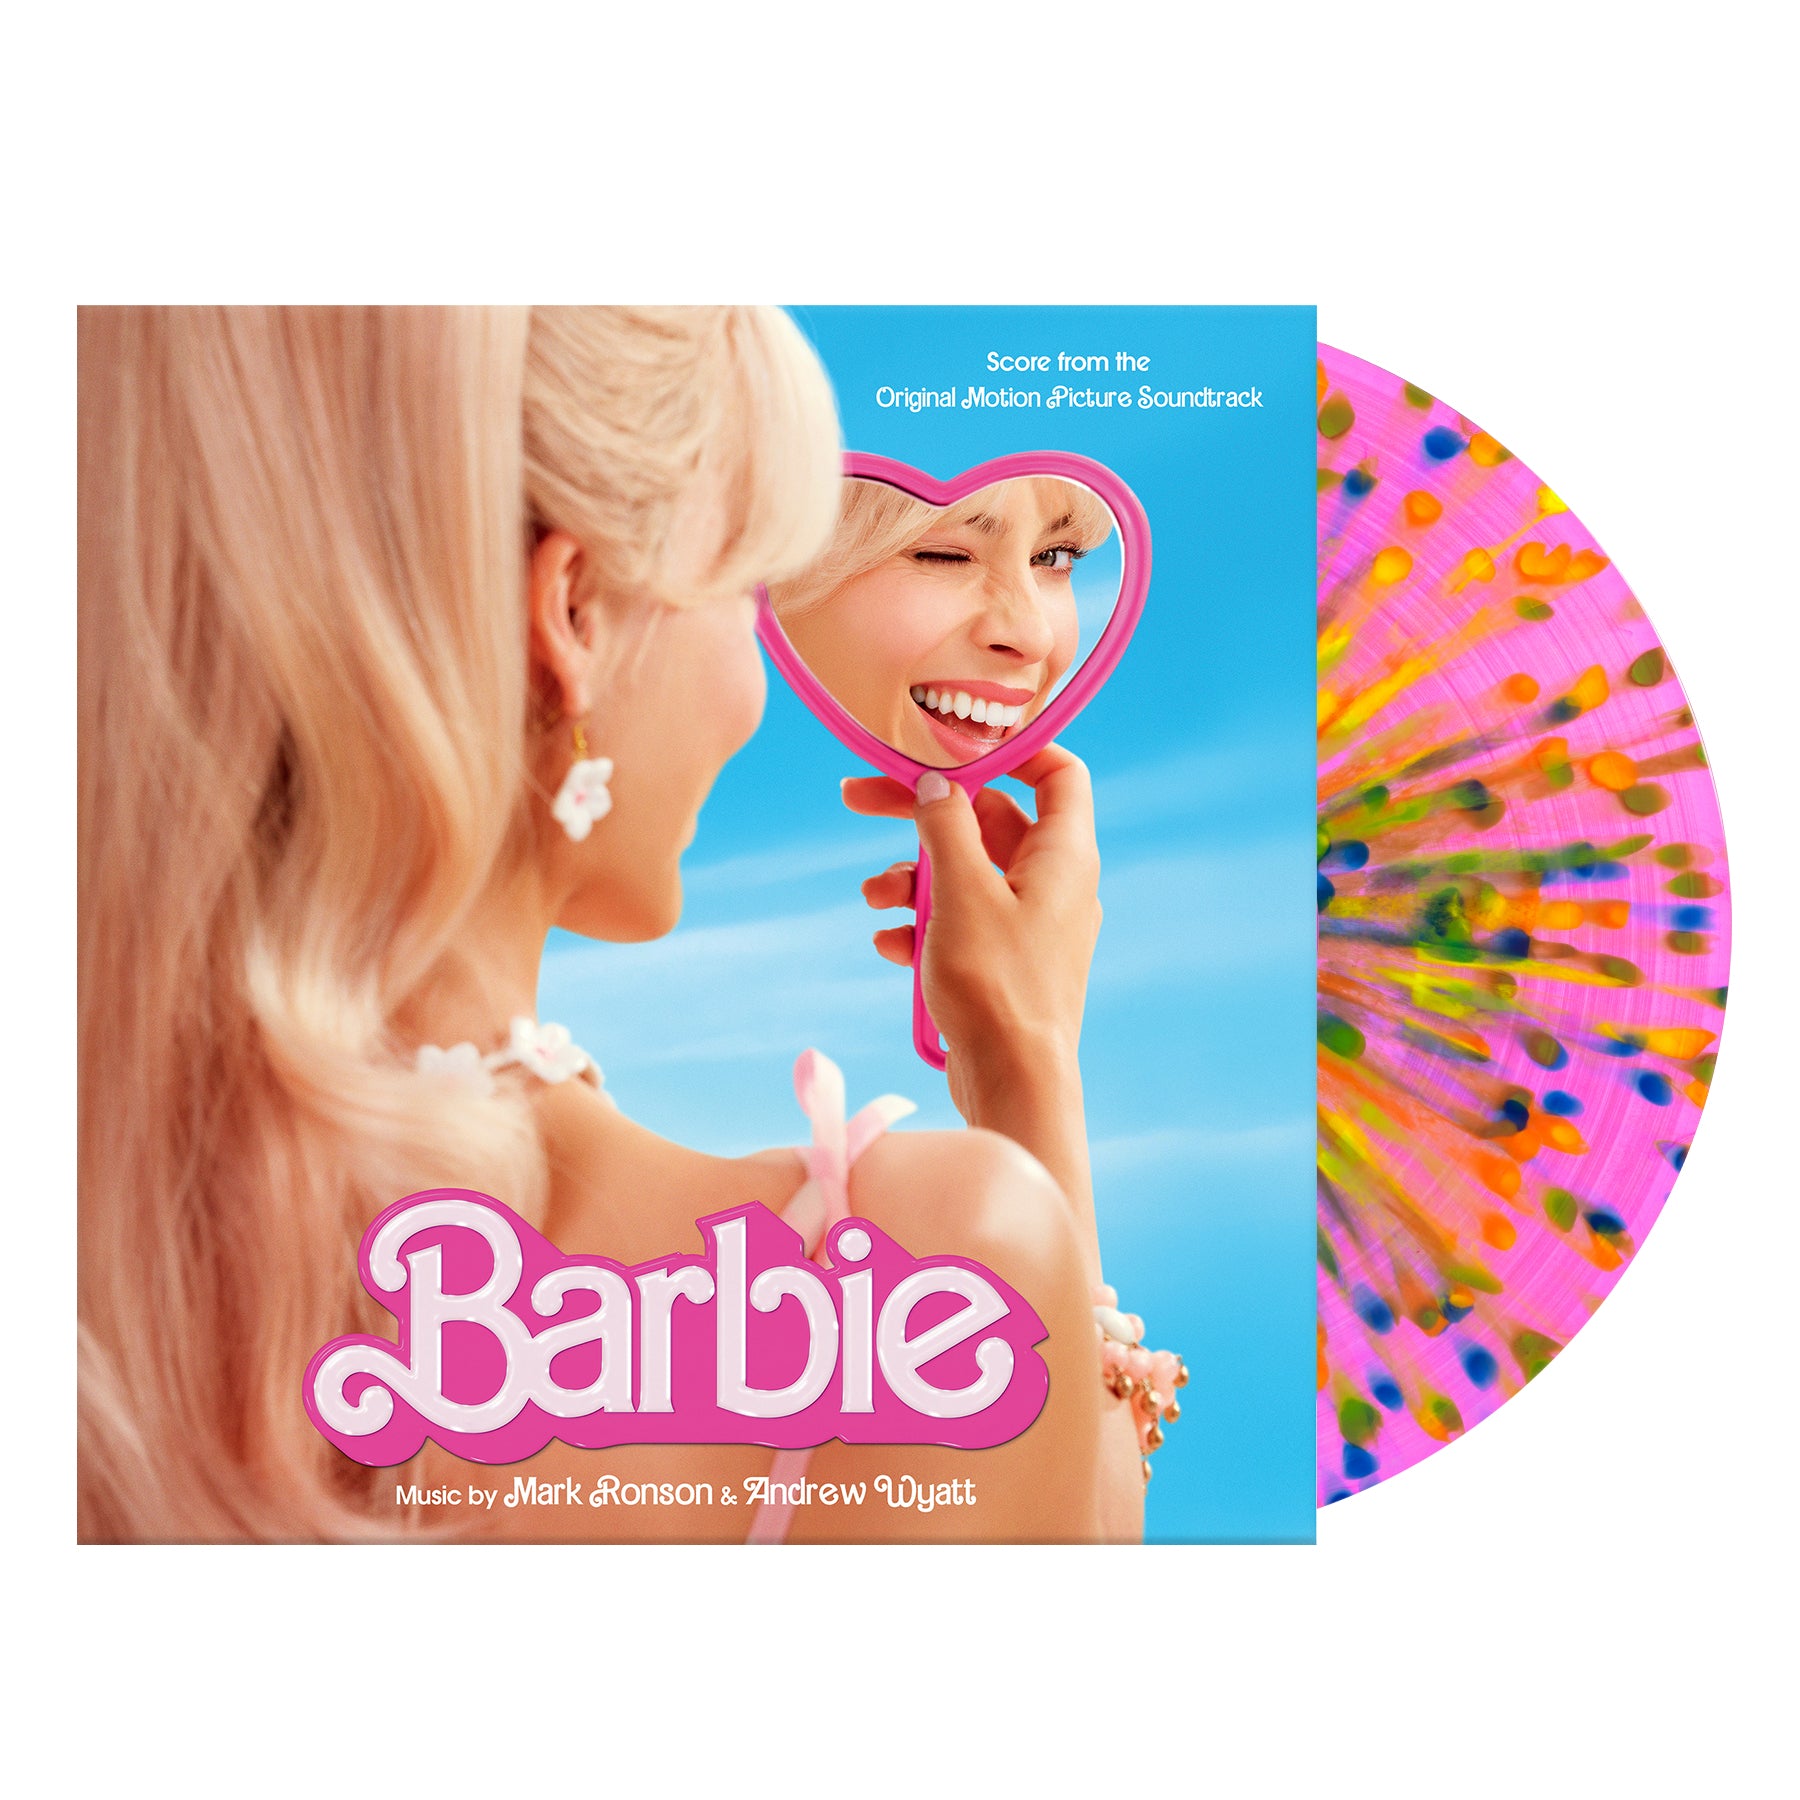 Weird-Barbie-Packshot-1_1800x1800.jpg